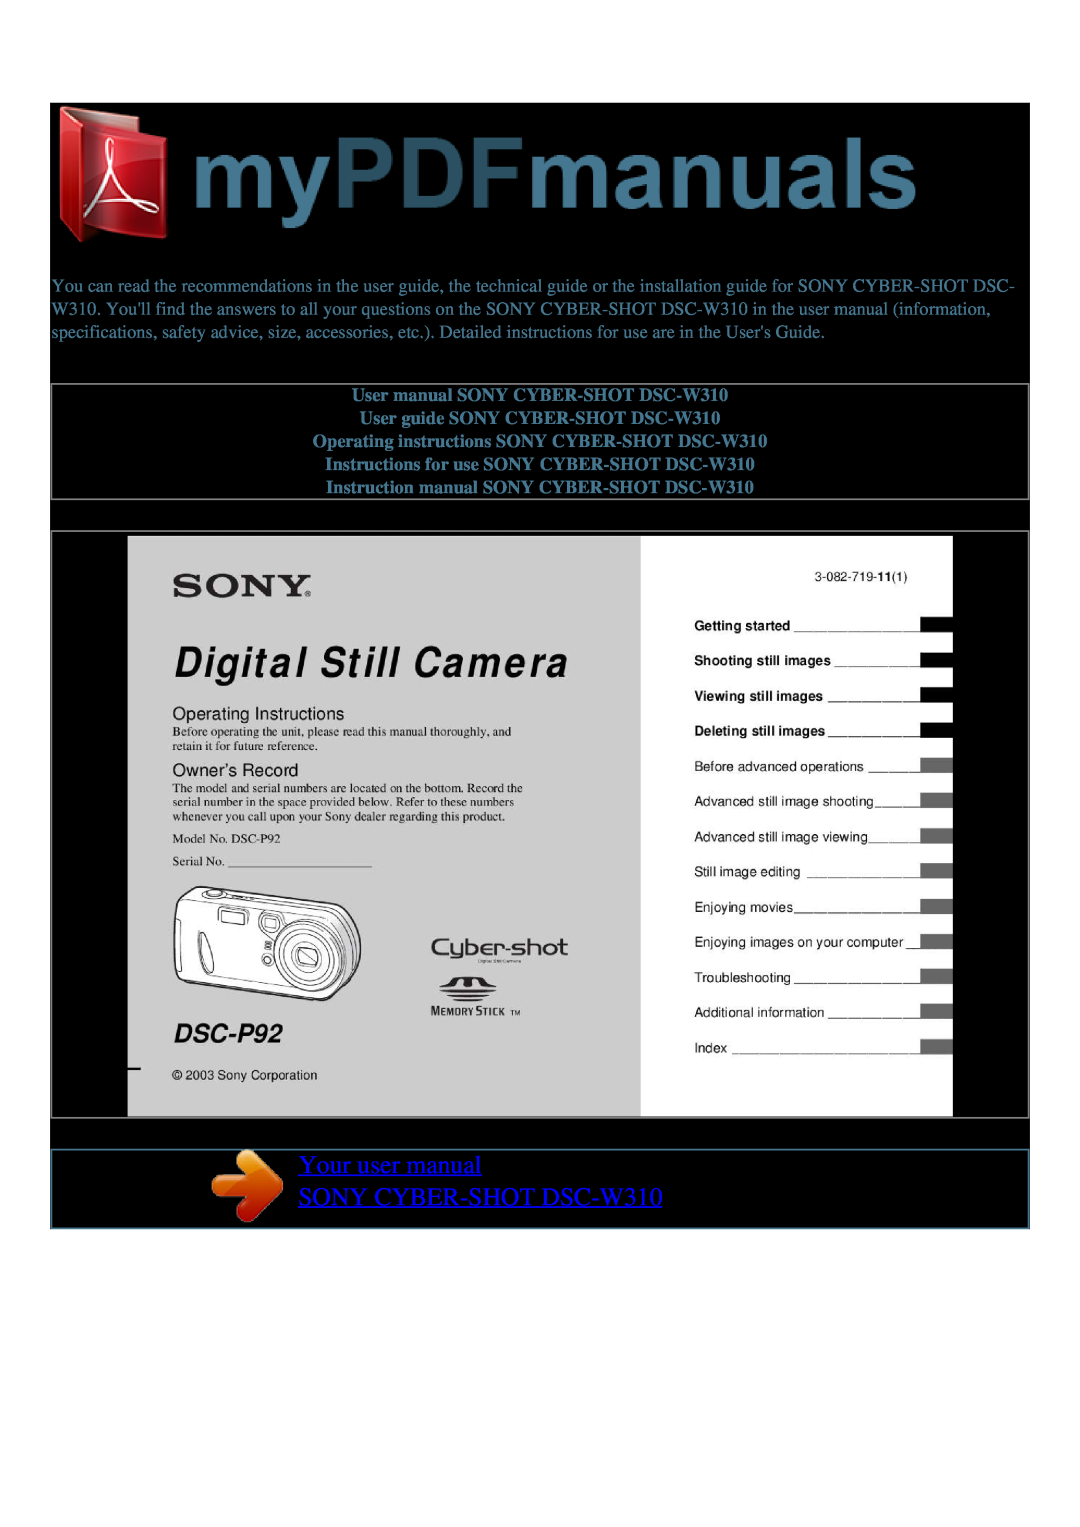 Sony user manual Your user manual SONY CYBER-SHOT DSC-W310 